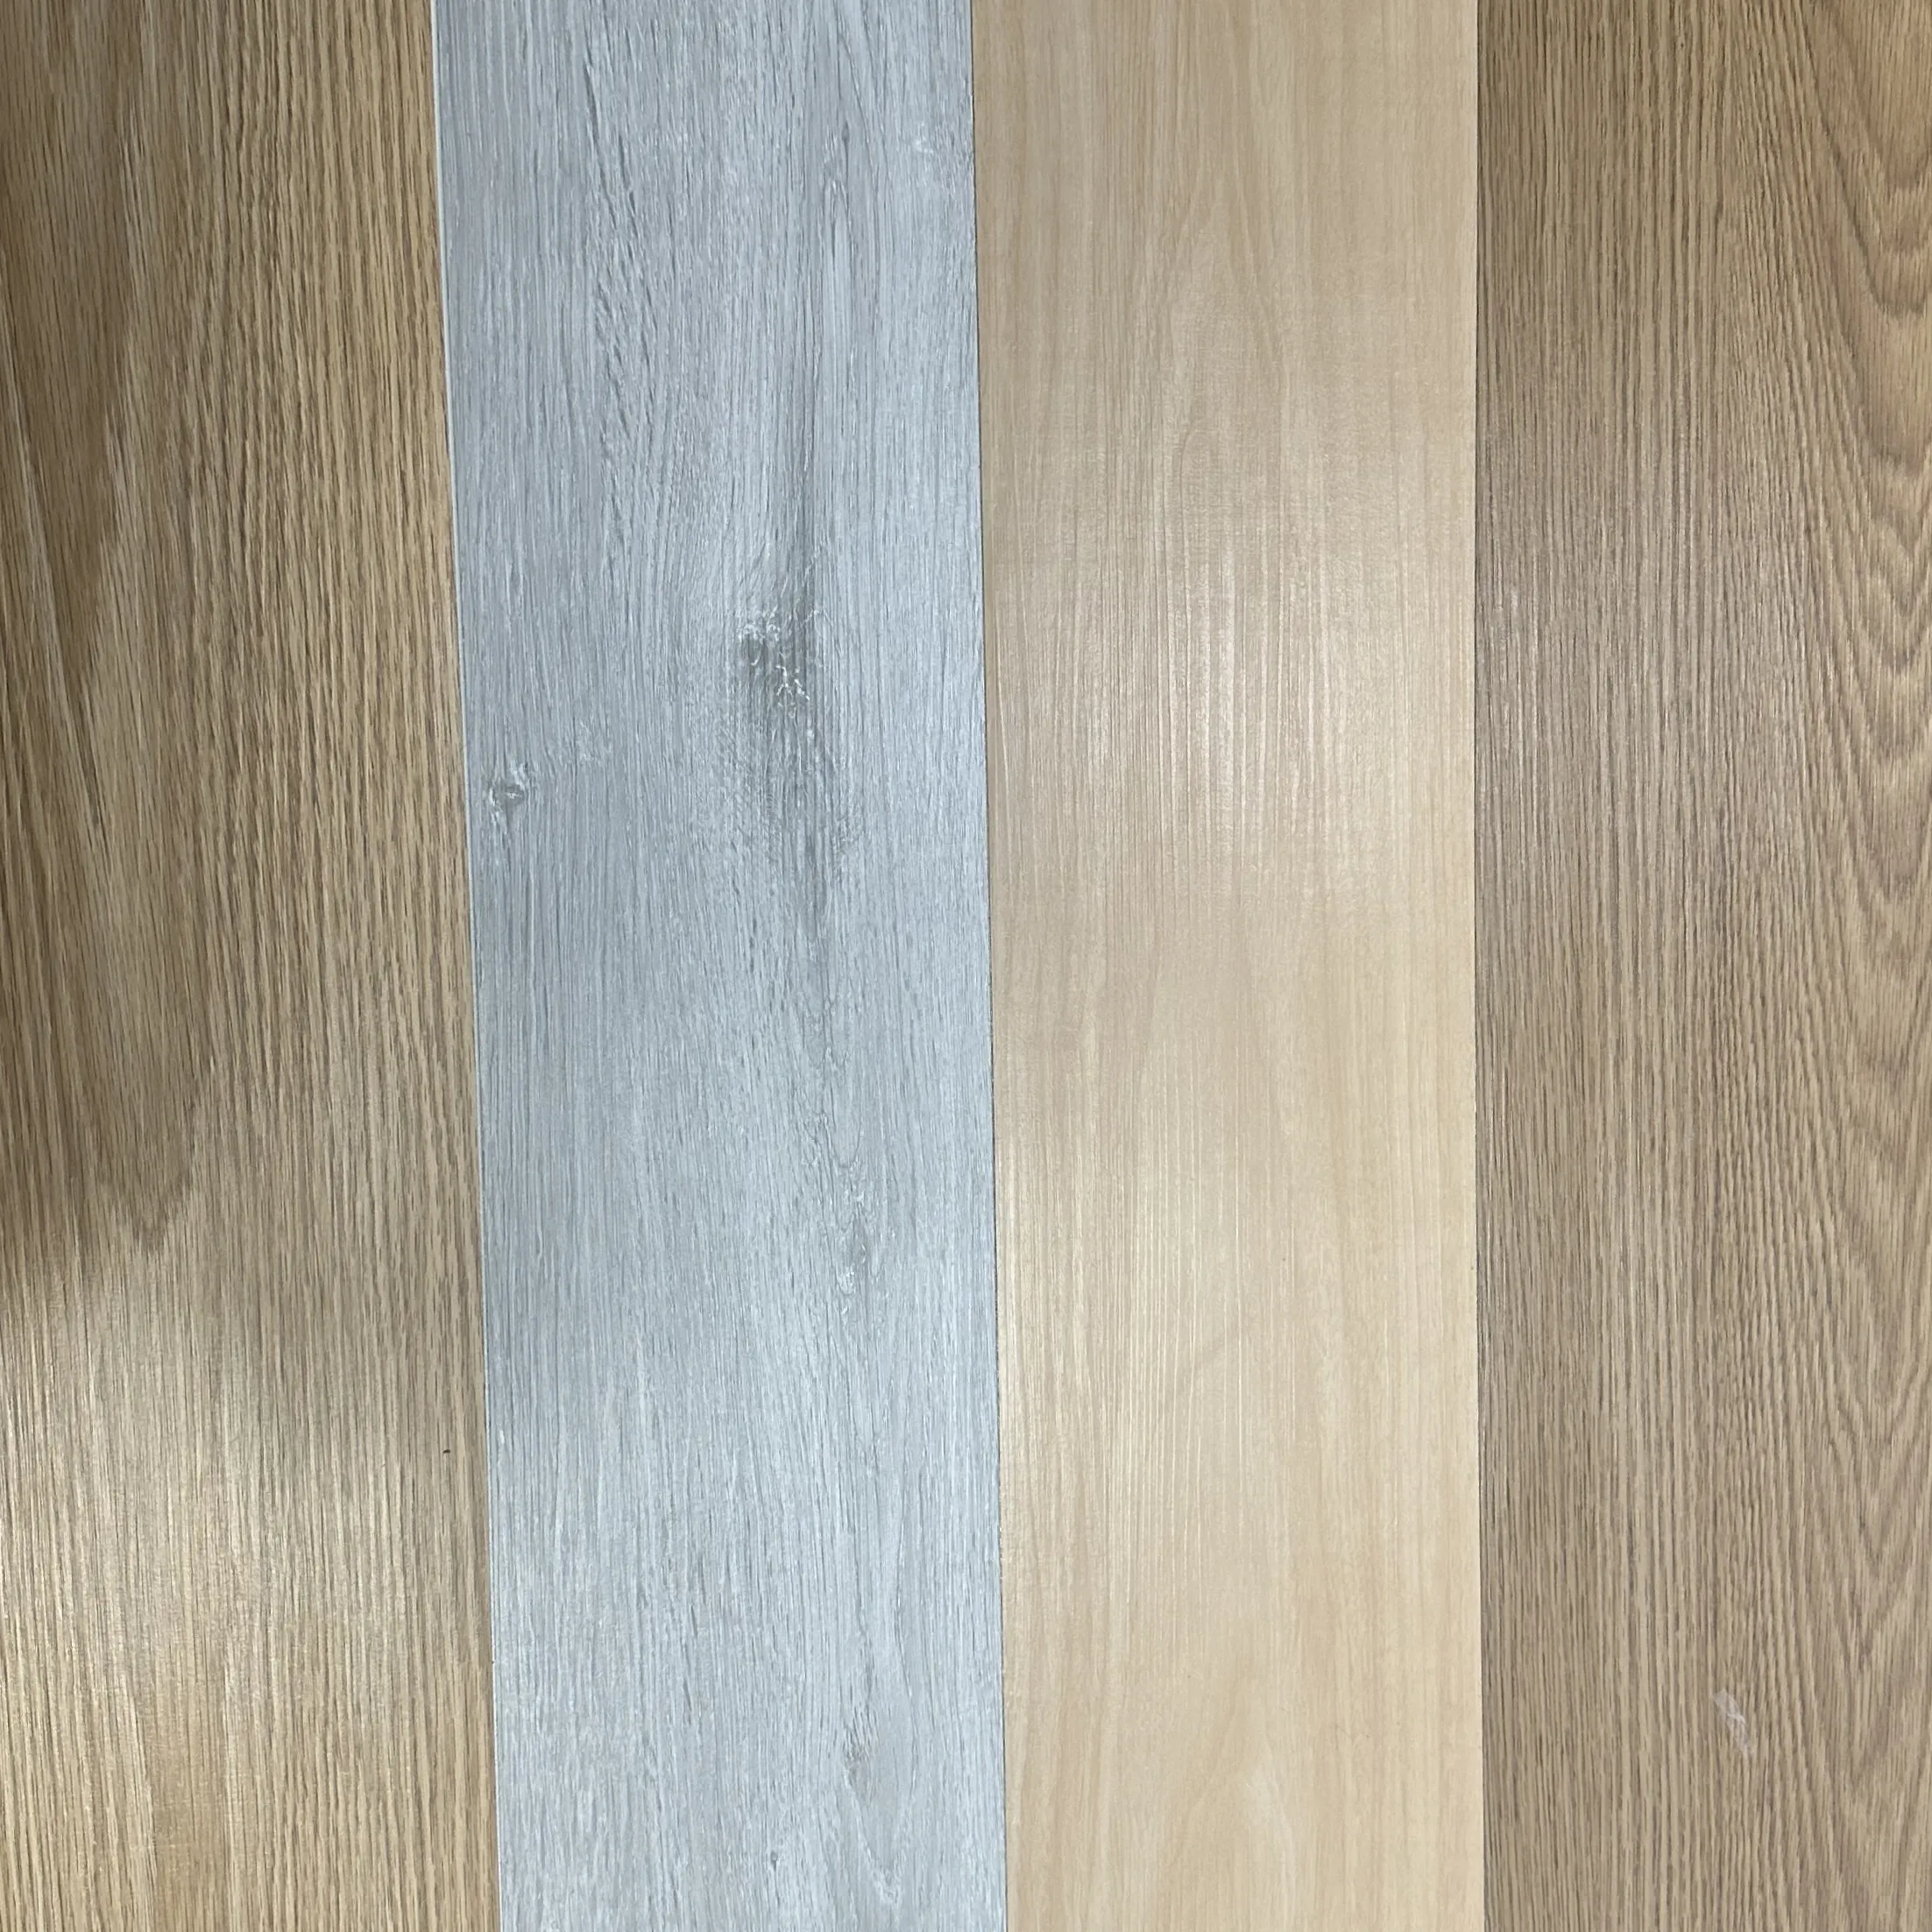 2mm PVC Self-Adhesive Vinyl Flooring Self-Adhesive Flooring Wood Pattern Floor